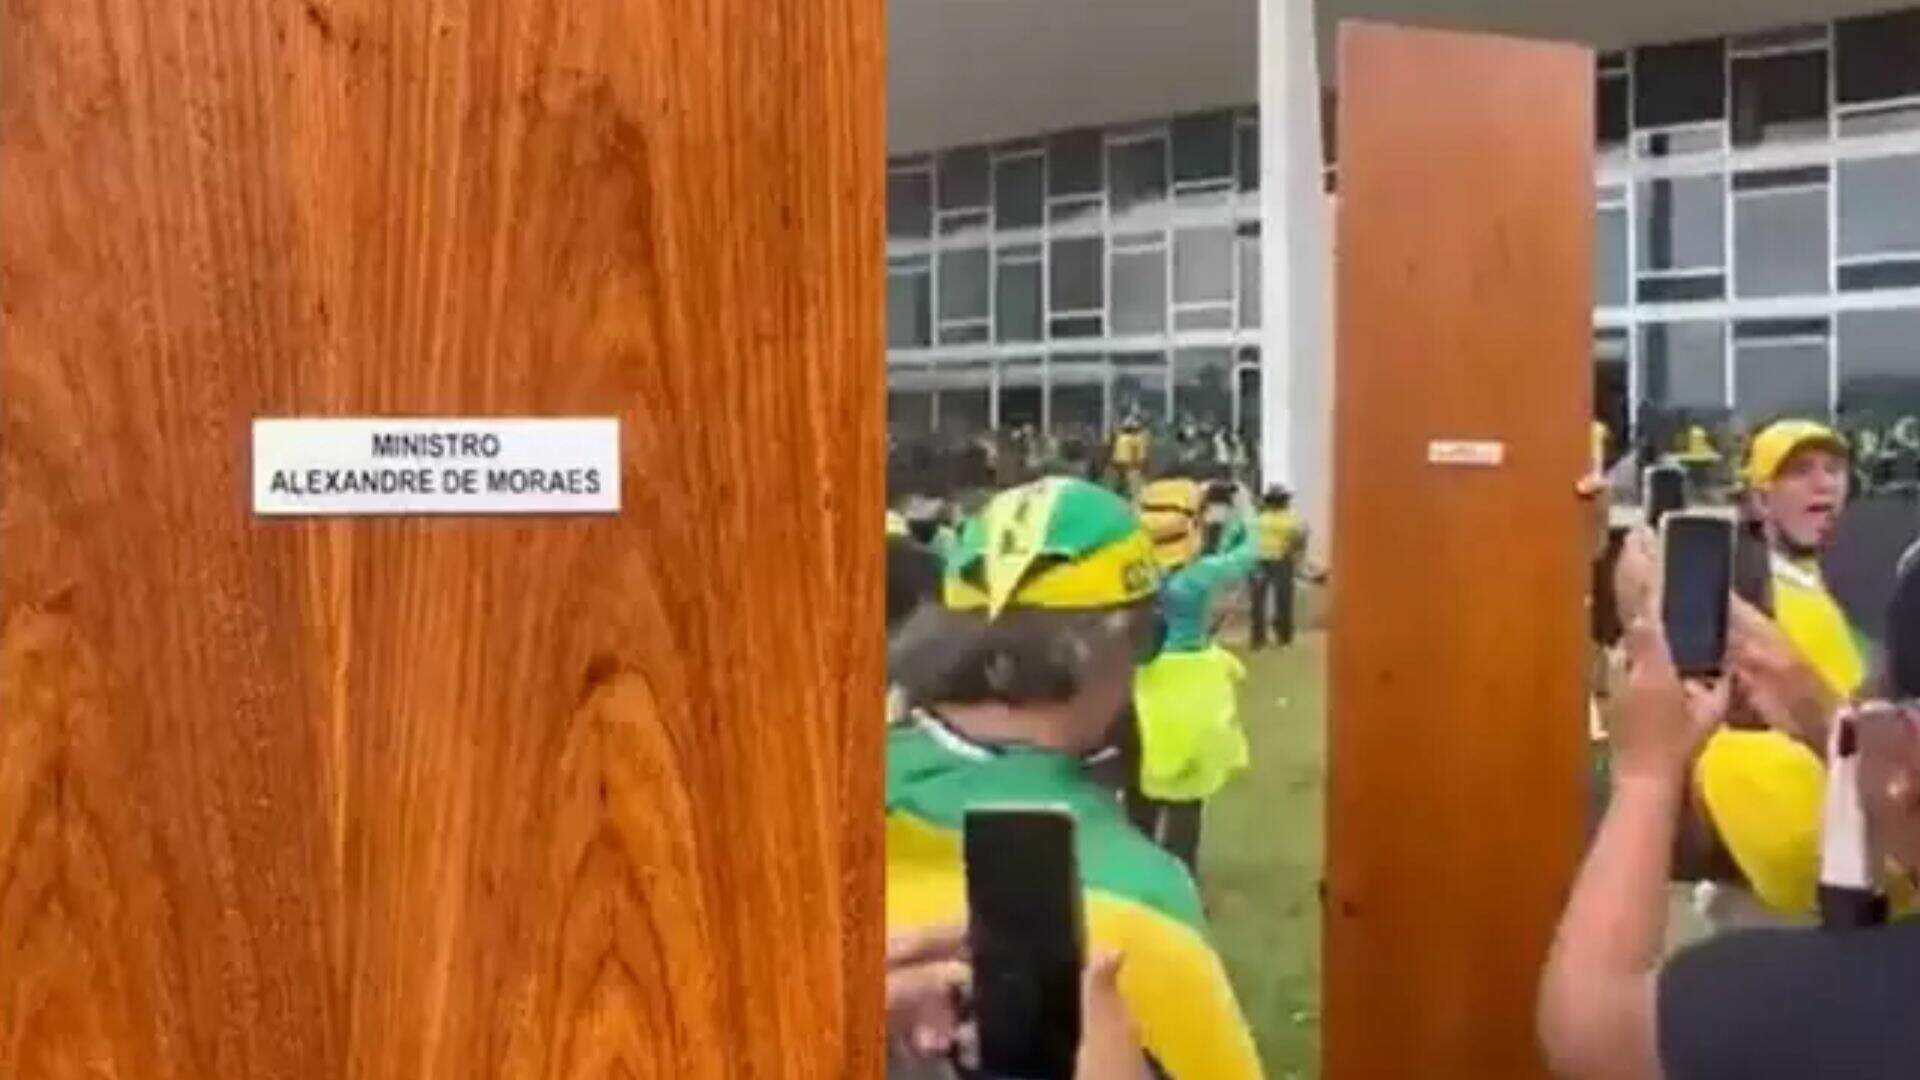 Porta do gabinete do ministro Alexandre de Moraes foi arrancada em manifestação: ‘vem buscar’